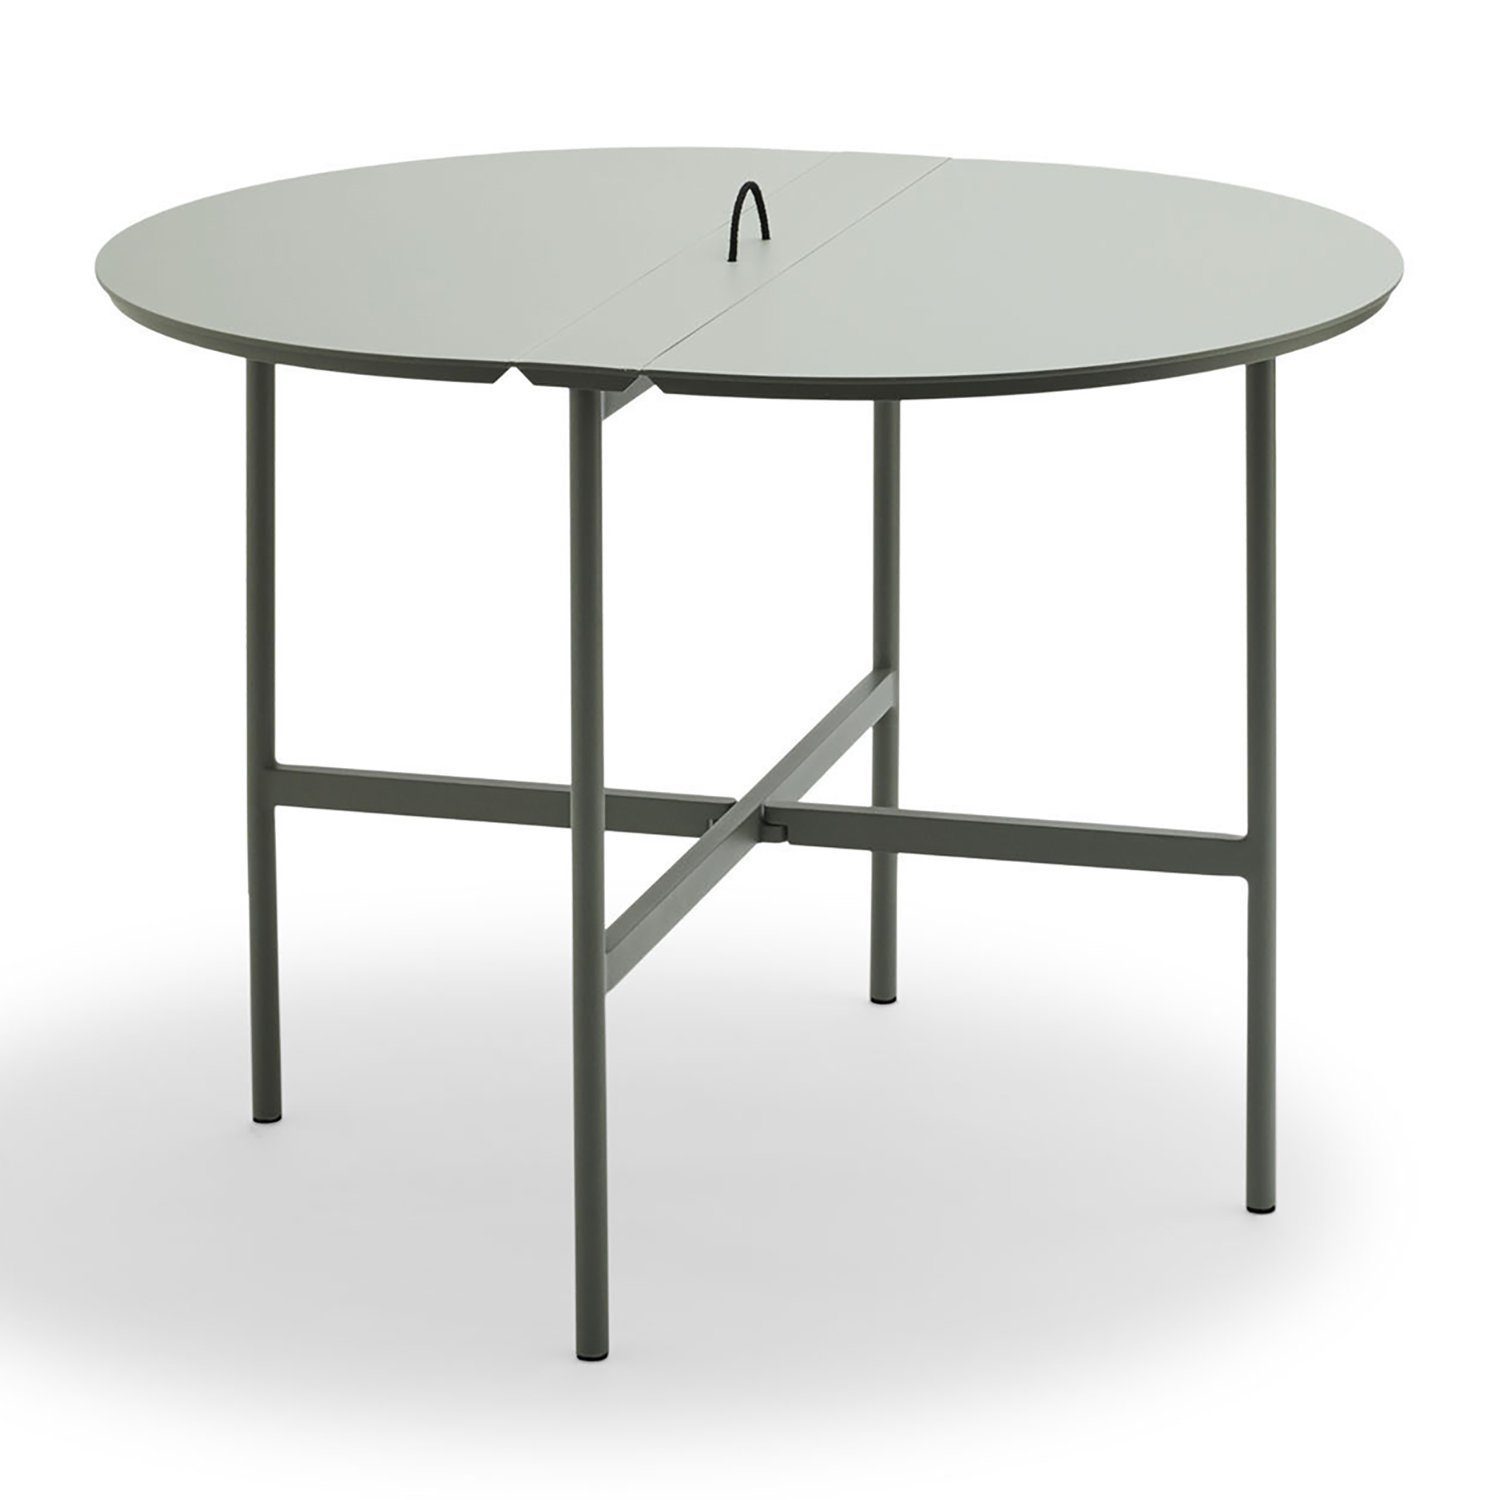 Picnic klaffbord skiffergrå 105x85 cm